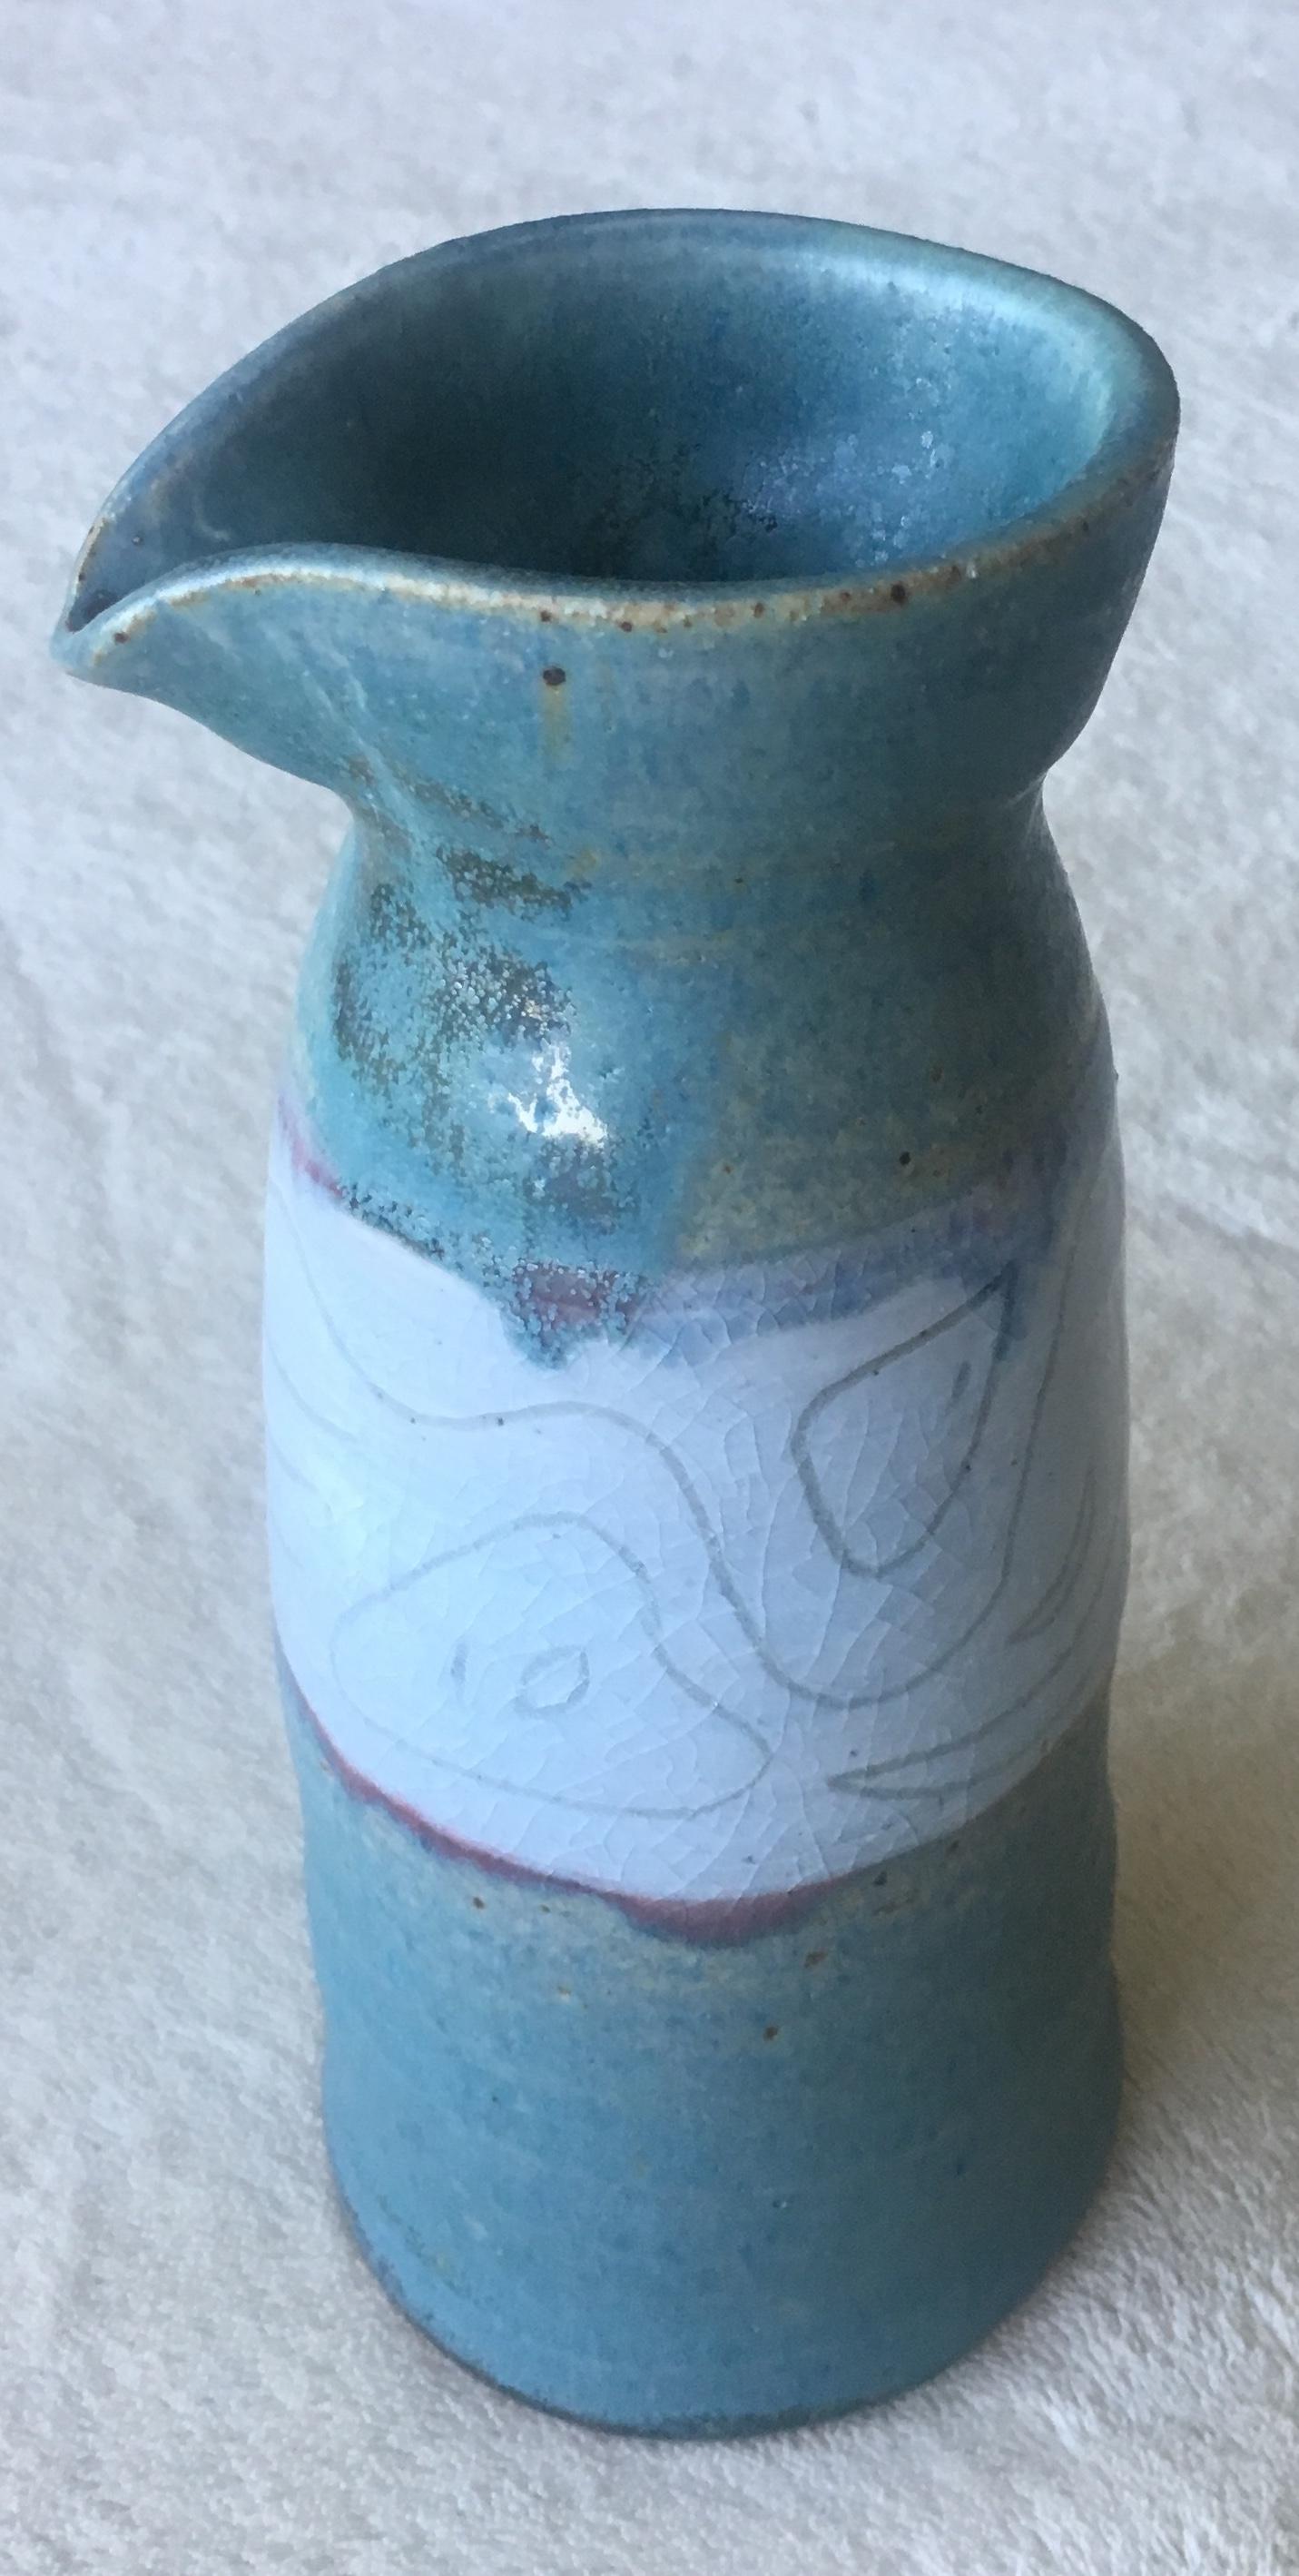 Beau vase à décor émaillé, stylisé et graphique, révélant une sous-glaçure bleu vert mat contrastée. 

Pièce unique fabriquée à la main. 
Signé.